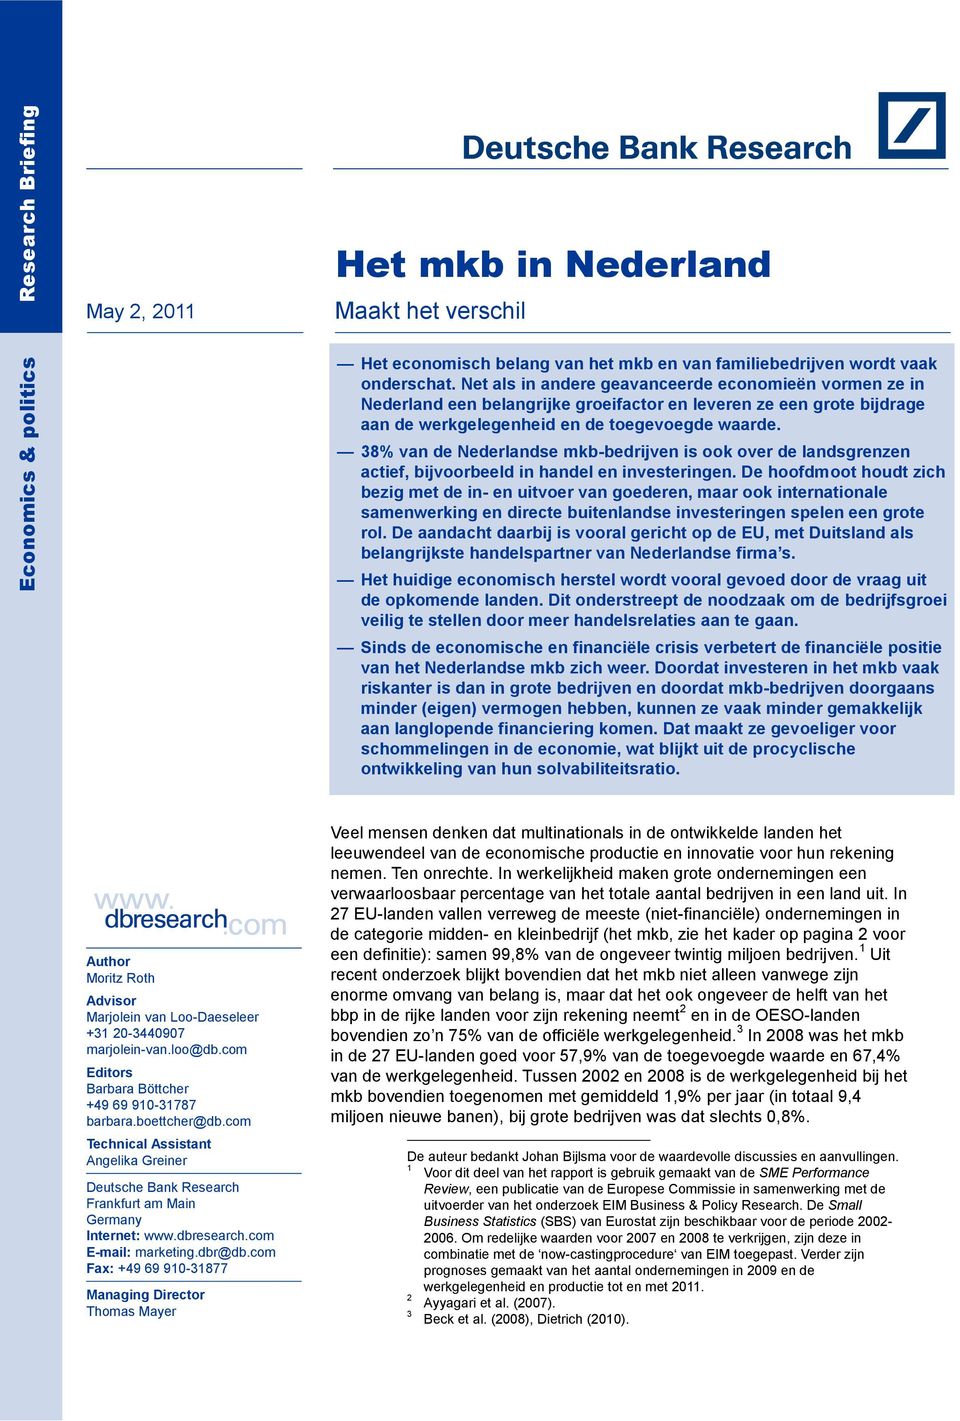 38% van de Nederlandse mkb-bedrijven is ook over de landsgrenzen actief, bijvoorbeeld in handel en investeringen.